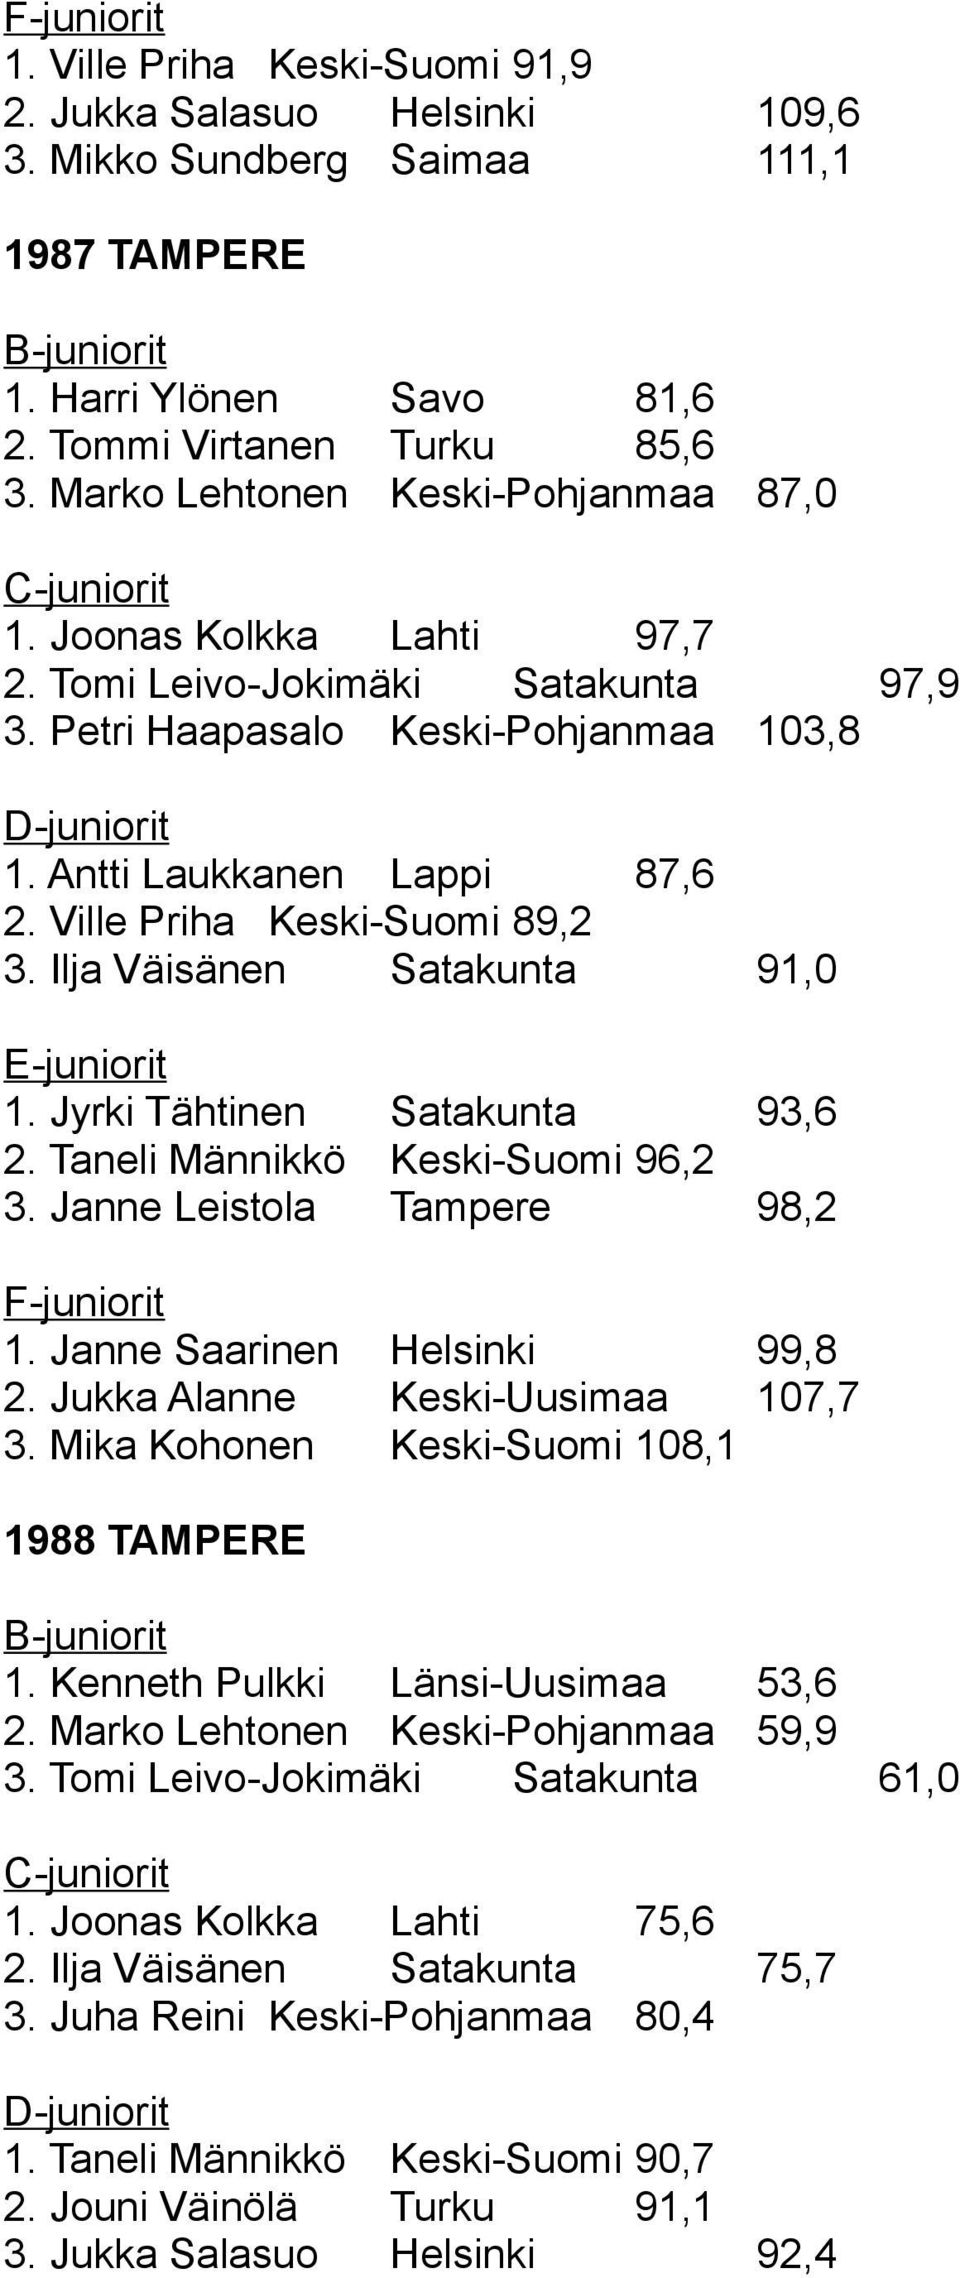 Ville Priha Keski-Suomi 89,2 3. Ilja Väisänen Satakunta 91,0 E-juniorit 1. Jyrki Tähtinen Satakunta 93,6 2. Taneli Männikkö Keski-Suomi 96,2 3. Janne Leistola Tampere 98,2 F-juniorit 1.